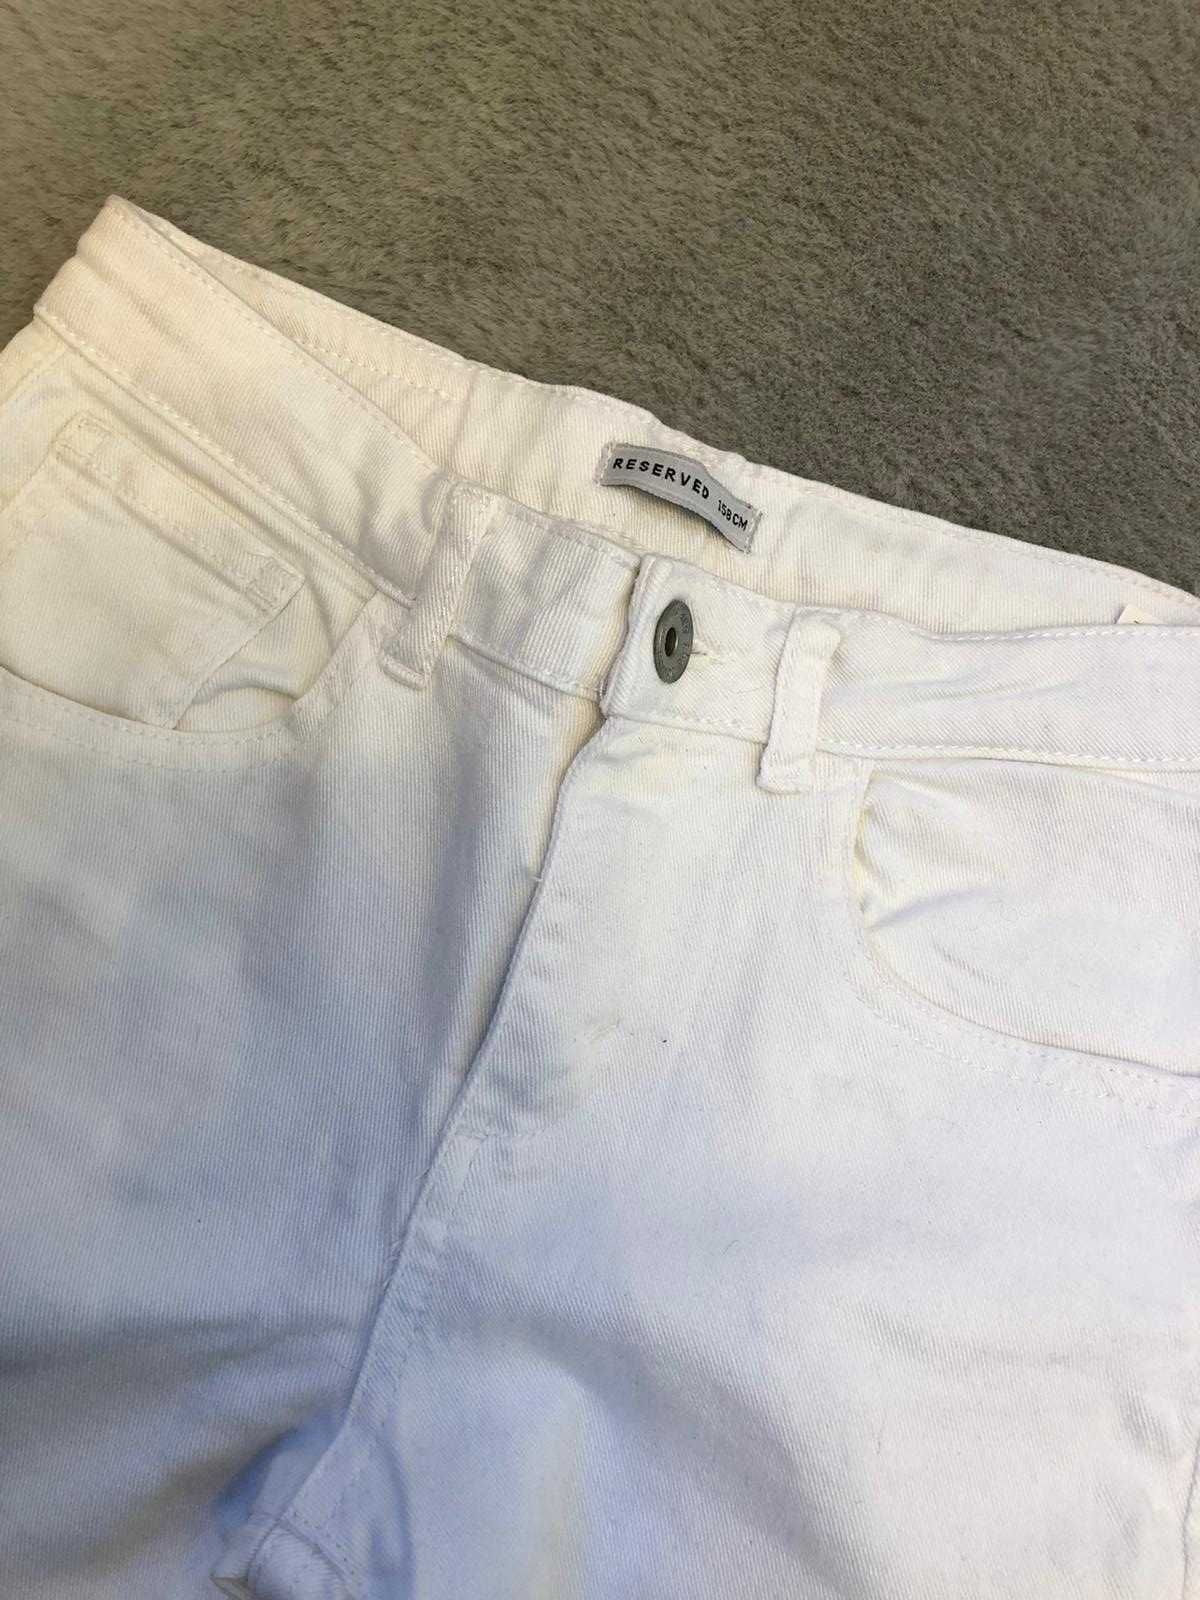 Biale spodnie jeansowe rurki przecierane Reserved 158cm / damskie XS